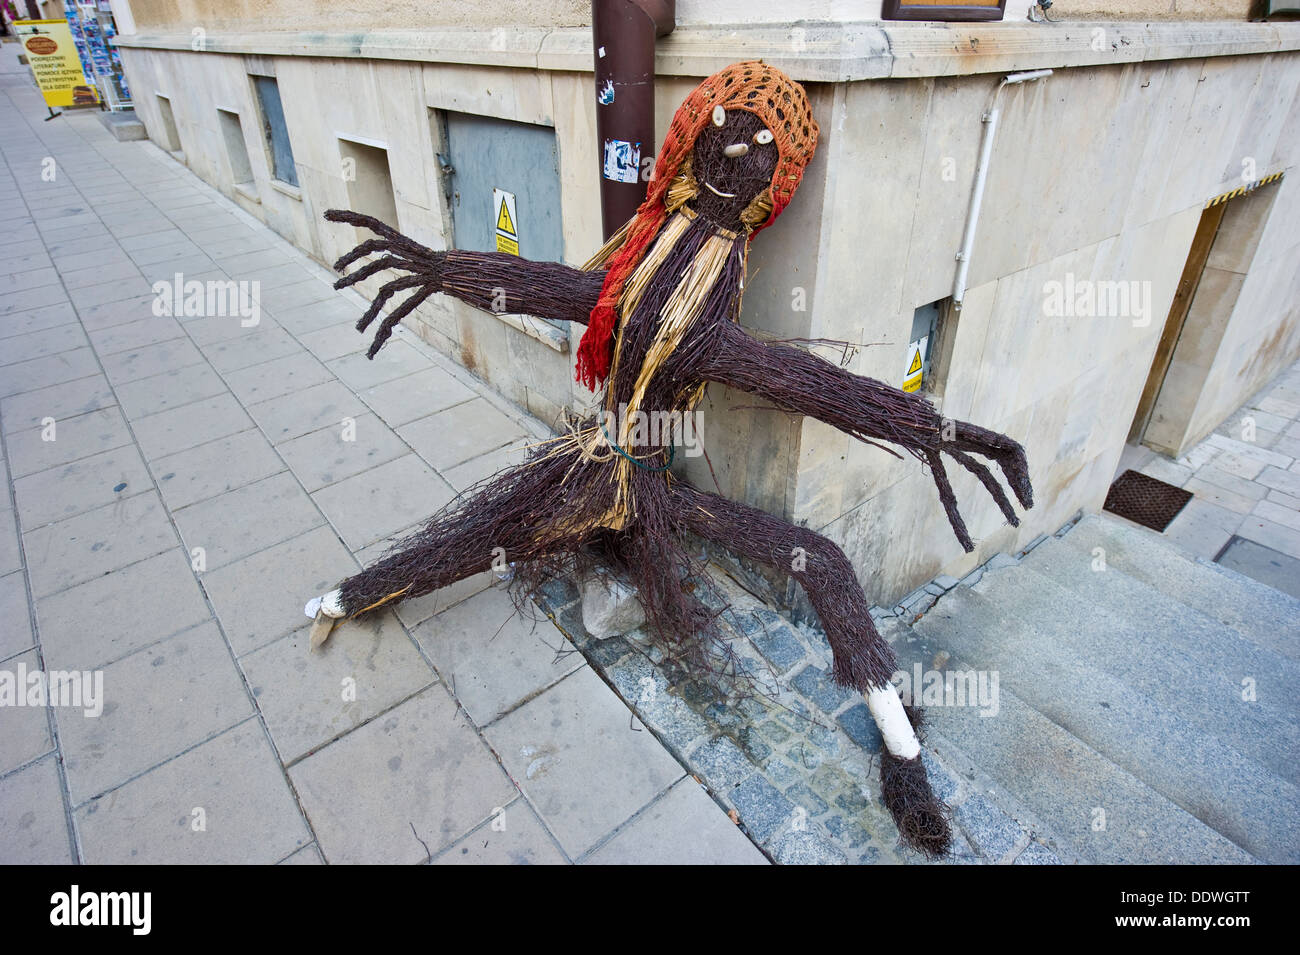 Una hembra de ramitas de títeres publicado en una calle para atraer clientes. Foto de stock